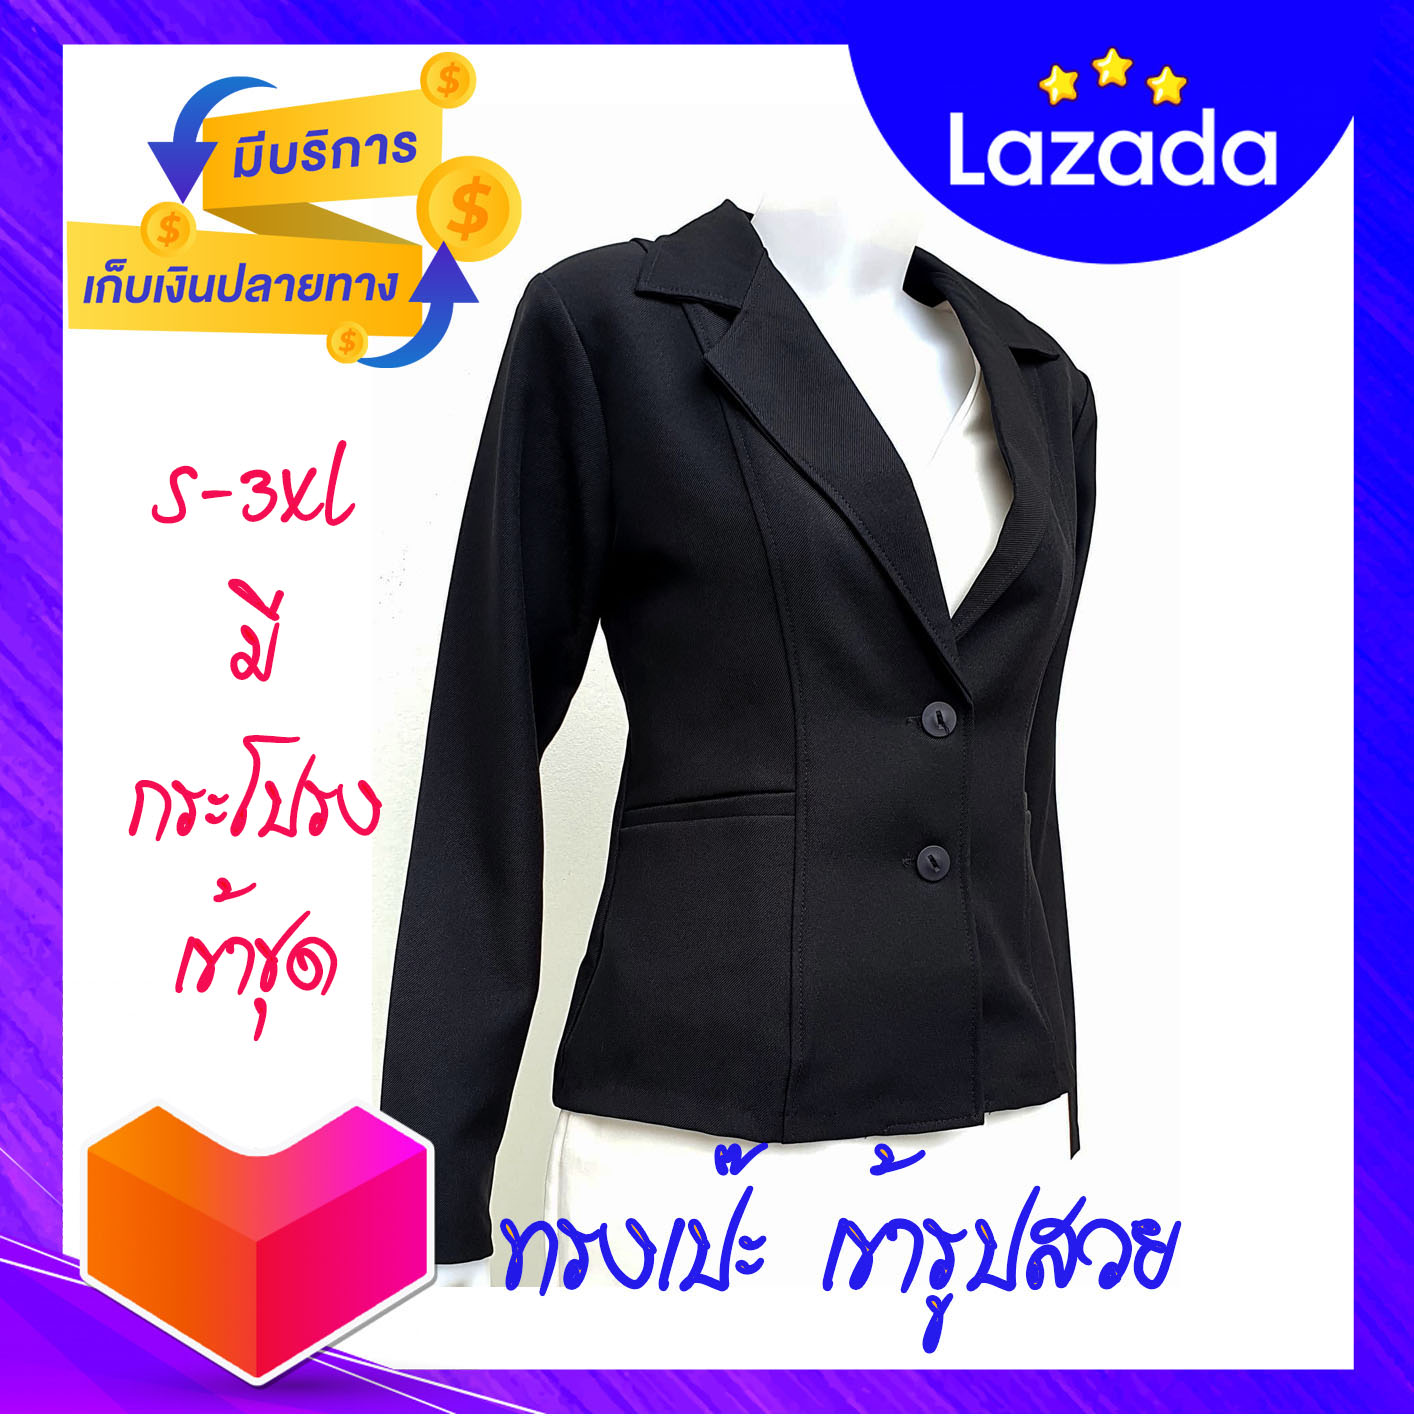 ((ส่งเร็ว))สูท5xl33-49นิ้วชุดสูทสัมภาษณ์งาน ชุดสเสื้อสูทผ้าเสริตยับยาก ส่งเร็วส่งทุกวันBlack Suits for Women สูทงานไทยเสื้อสูท สูทพร้อมส่ง สูททำงา